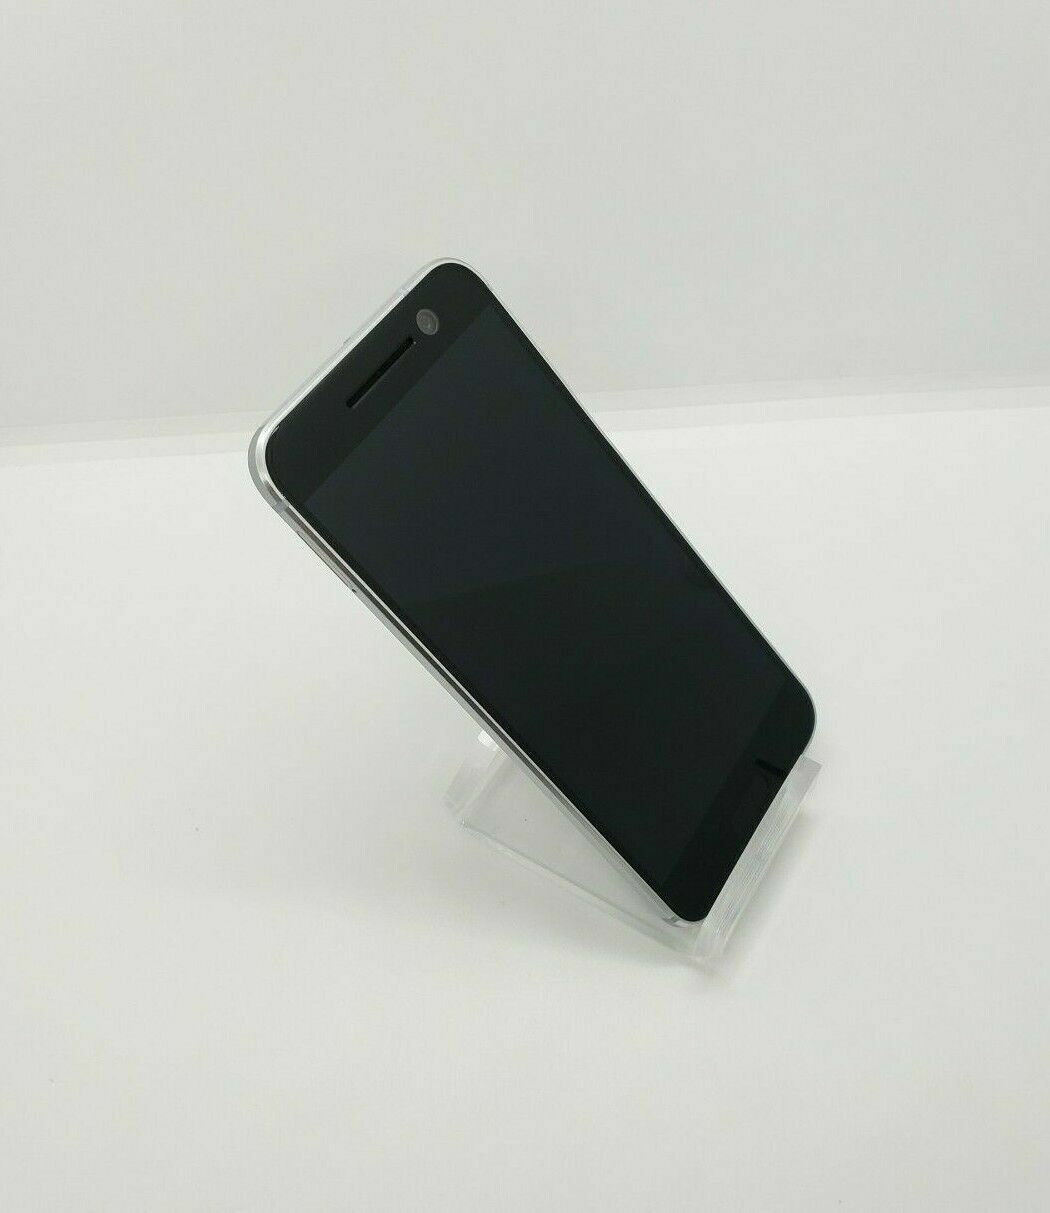 HTC 10 32GB Silver Verizon Android 4G LTE Smartphone HTC6545L